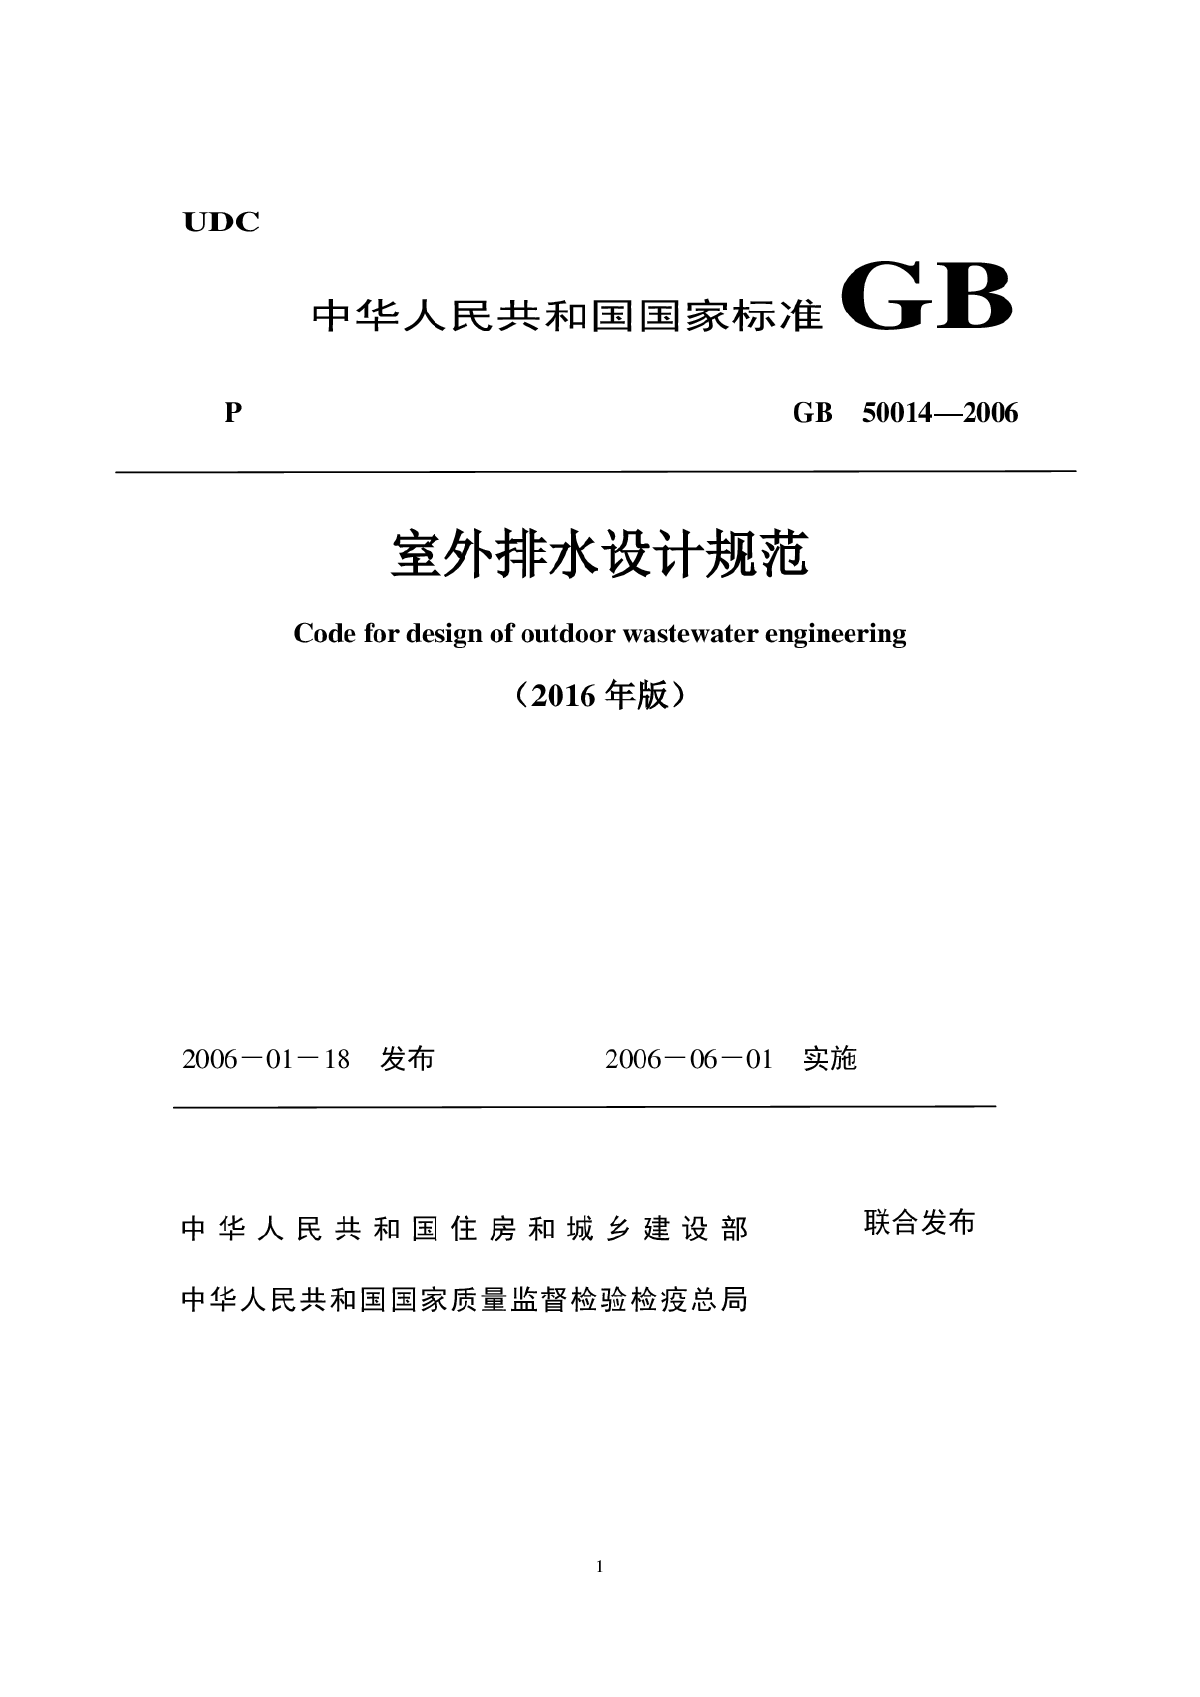 GB 50014-2006(2016年版) 《室外排水设计规范》局部修订稿-图一